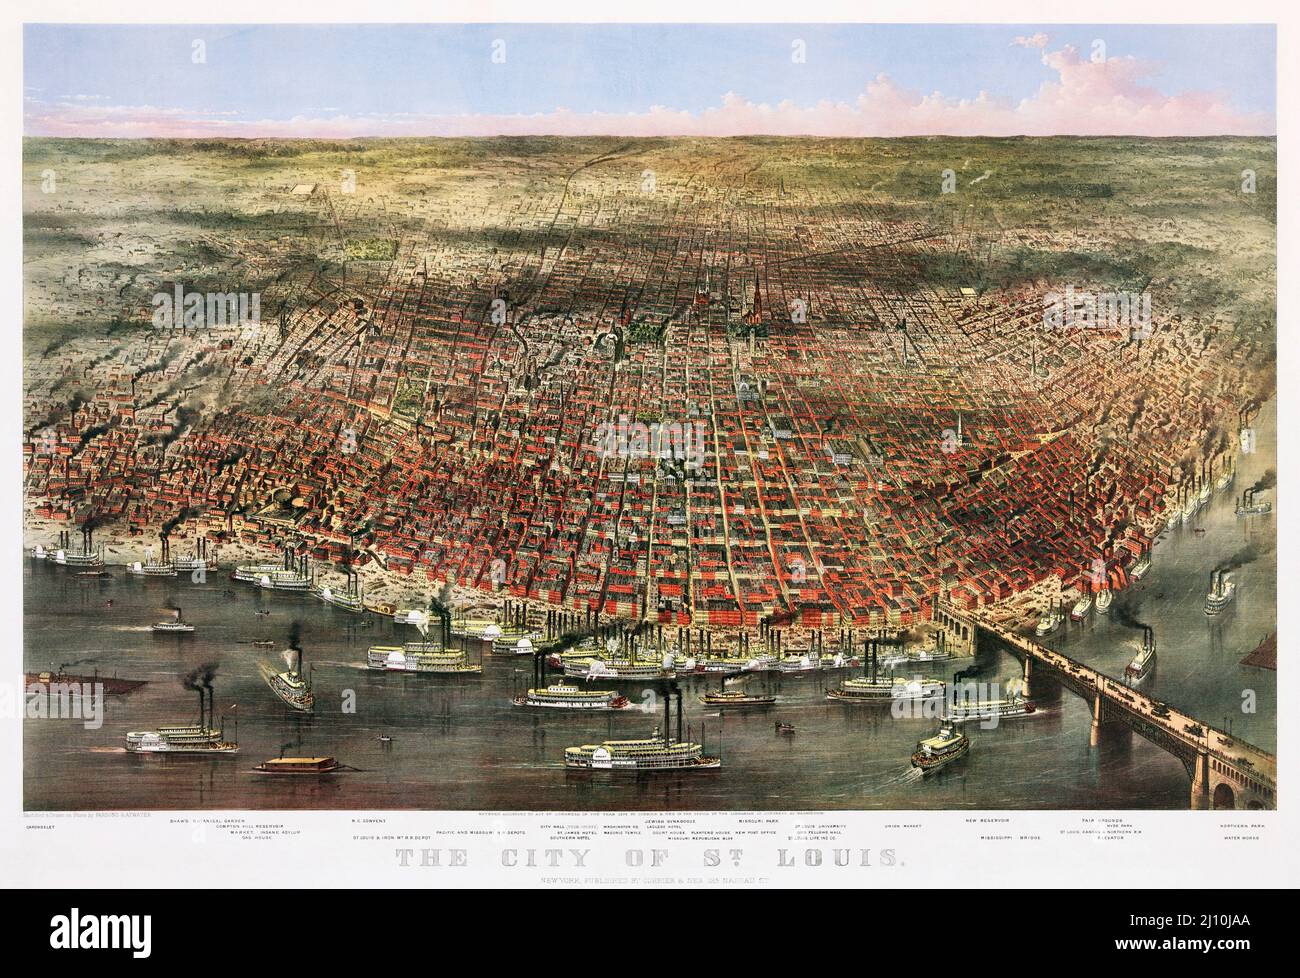 La ville de St. Louis, Missouri, États-Unis d'Amérique. Un panorama aérien de la ville publié par Currier & Ives en 1874. Le chromolithographe a été réalisé à l'âge d'or des bateaux à vapeur du fleuve Mississippi qui peuvent être vus sur la photo. Banque D'Images